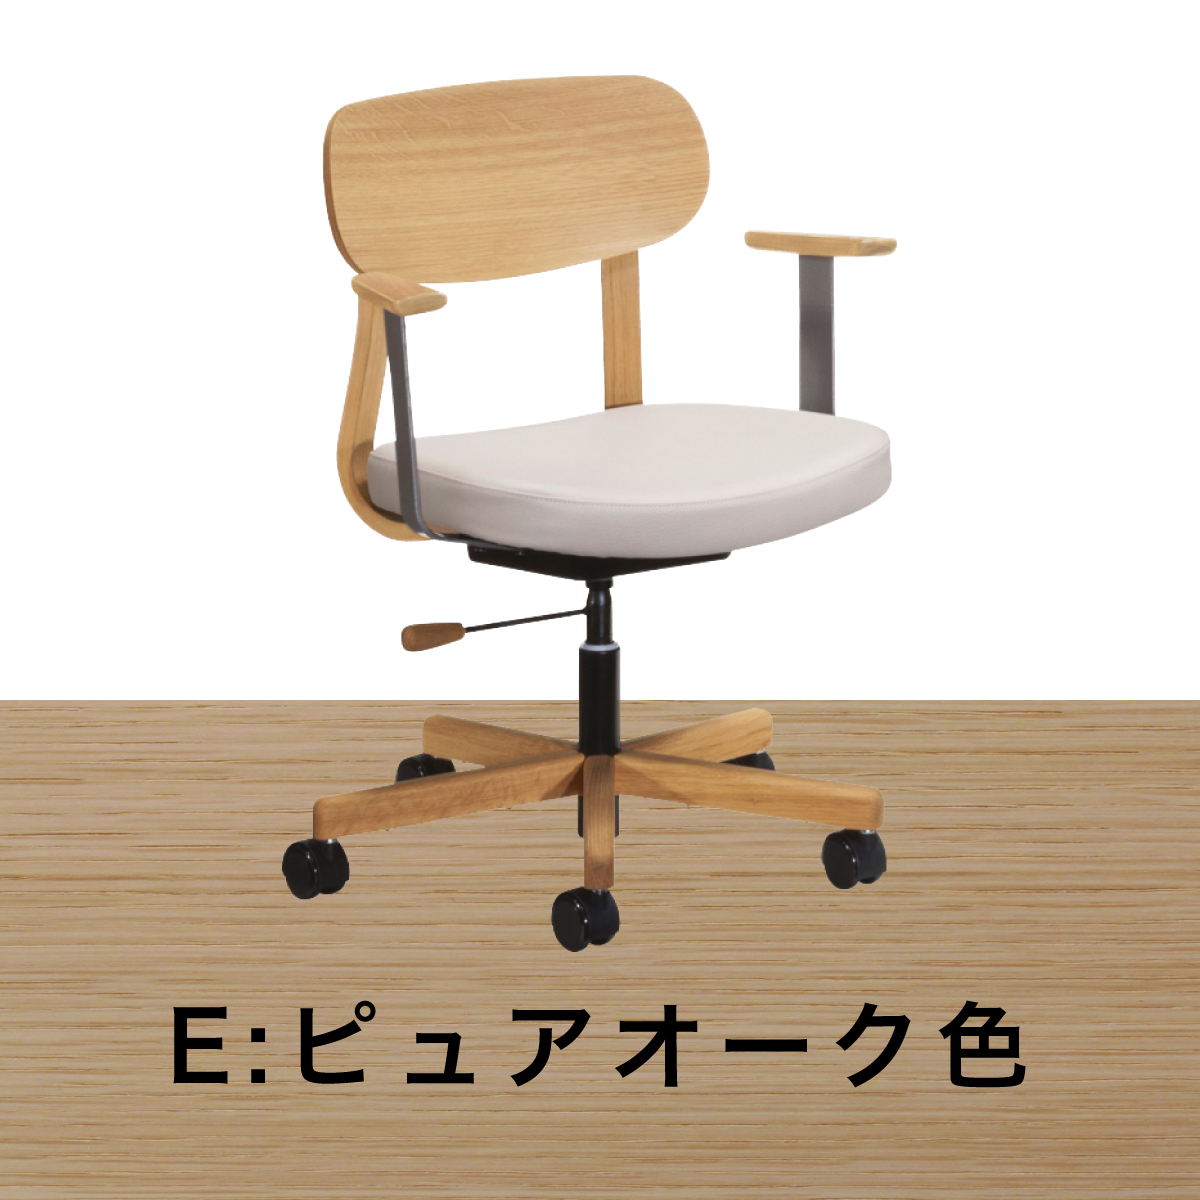 カリモク ワークチェア 肘付 デスクチェア XW3300 木製 キャスター オフィスチェア 高さ調整 学習椅子 合成皮革張り アーム付 回転椅子 国産  karimoku